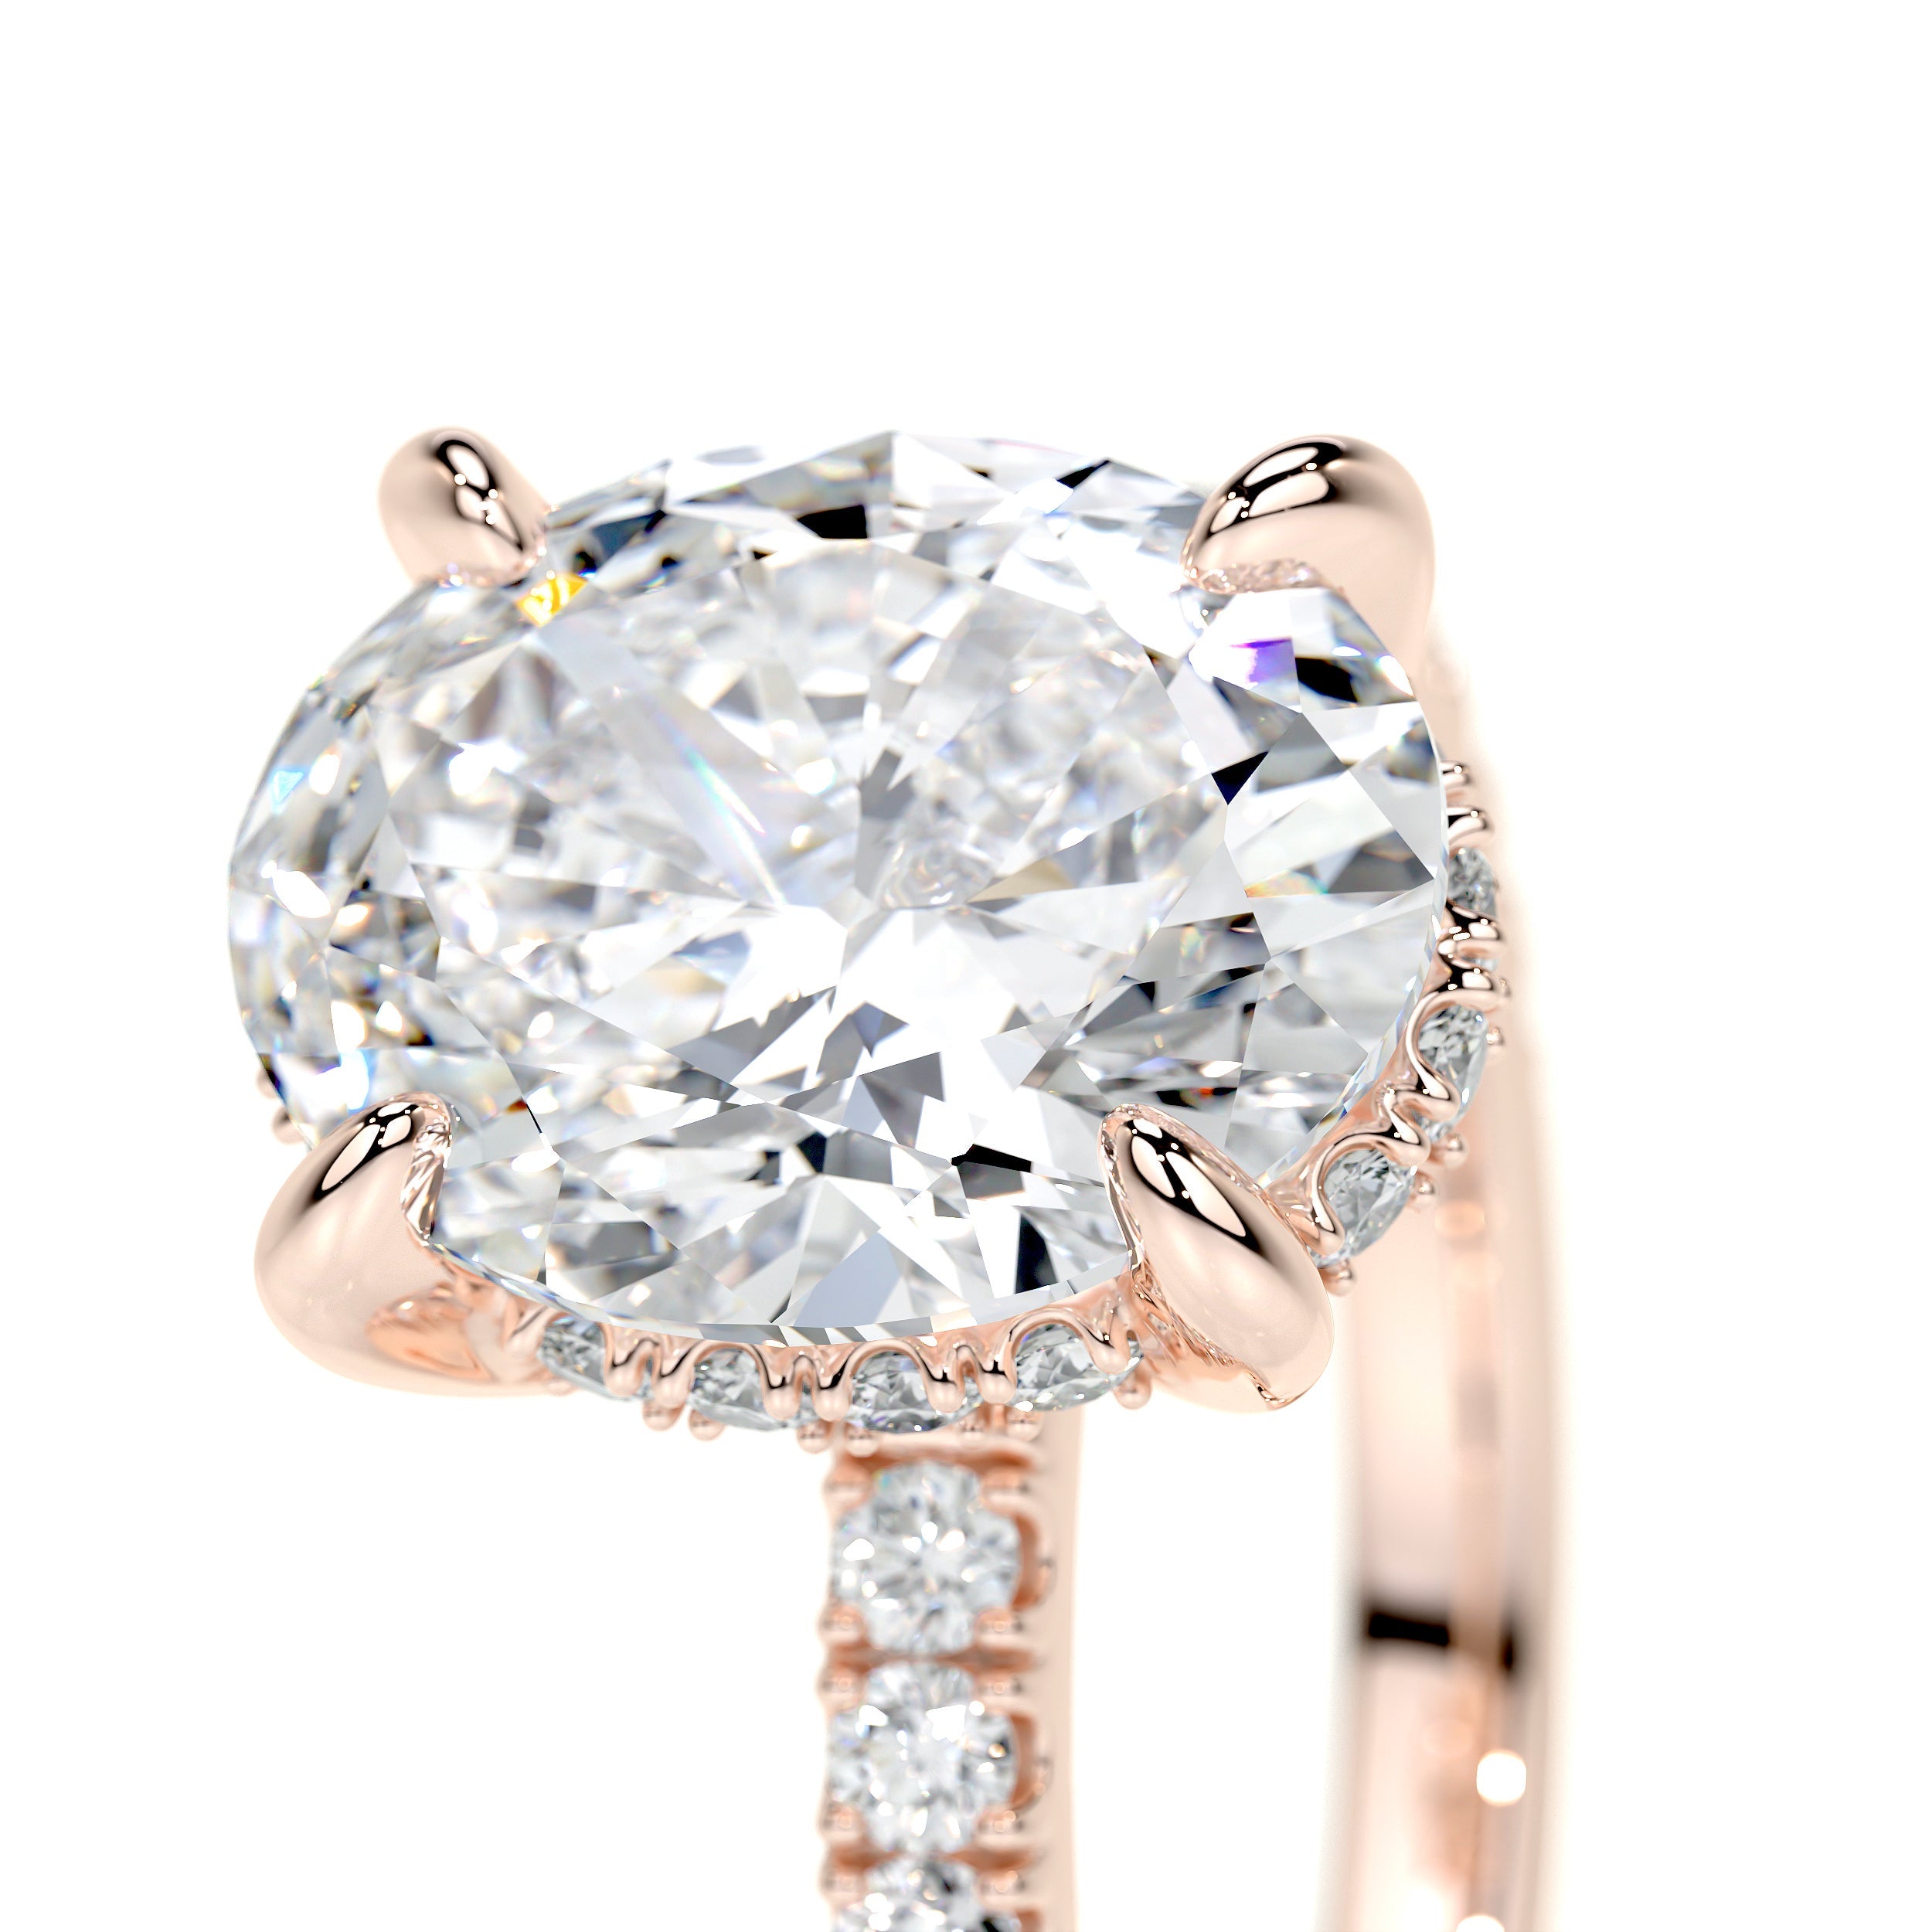 Lucy Lab Grown Diamond Ring   (2.5 Carat) -14K Rose Gold